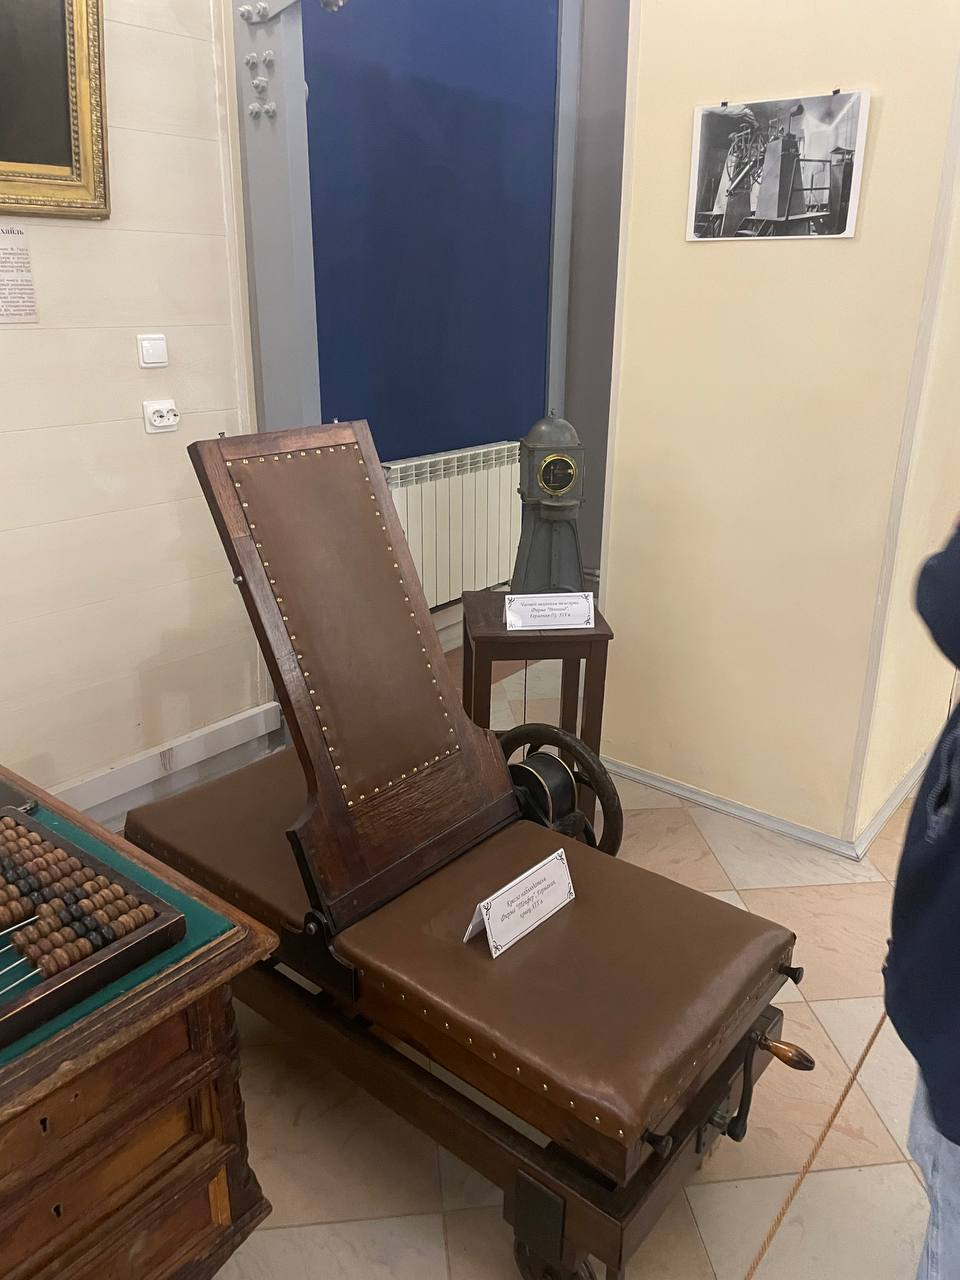 “Прообраз офисного стула” - экспонат из музея Пулковской обсерватории. Кресло предназначено для длительного наблюдения в телескоп за небесными объектами. Как и у современного офисного кресла, наклон спинки регулируется.